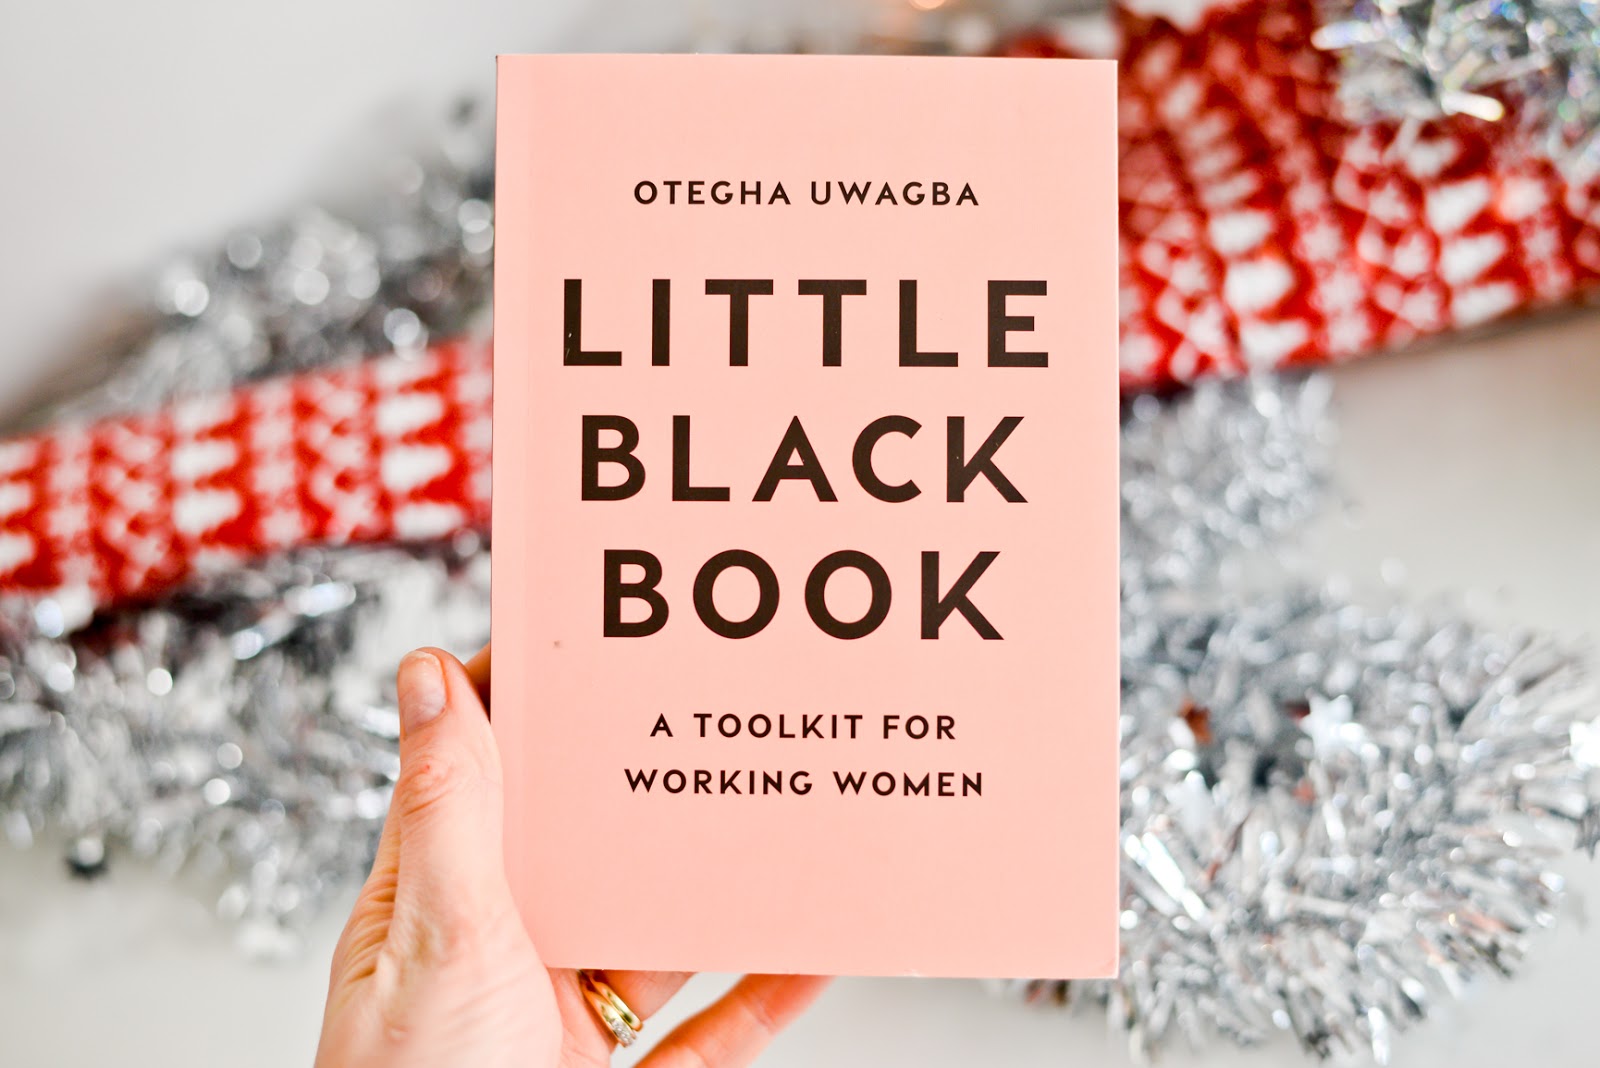 little black book, little black book otegha uwagba